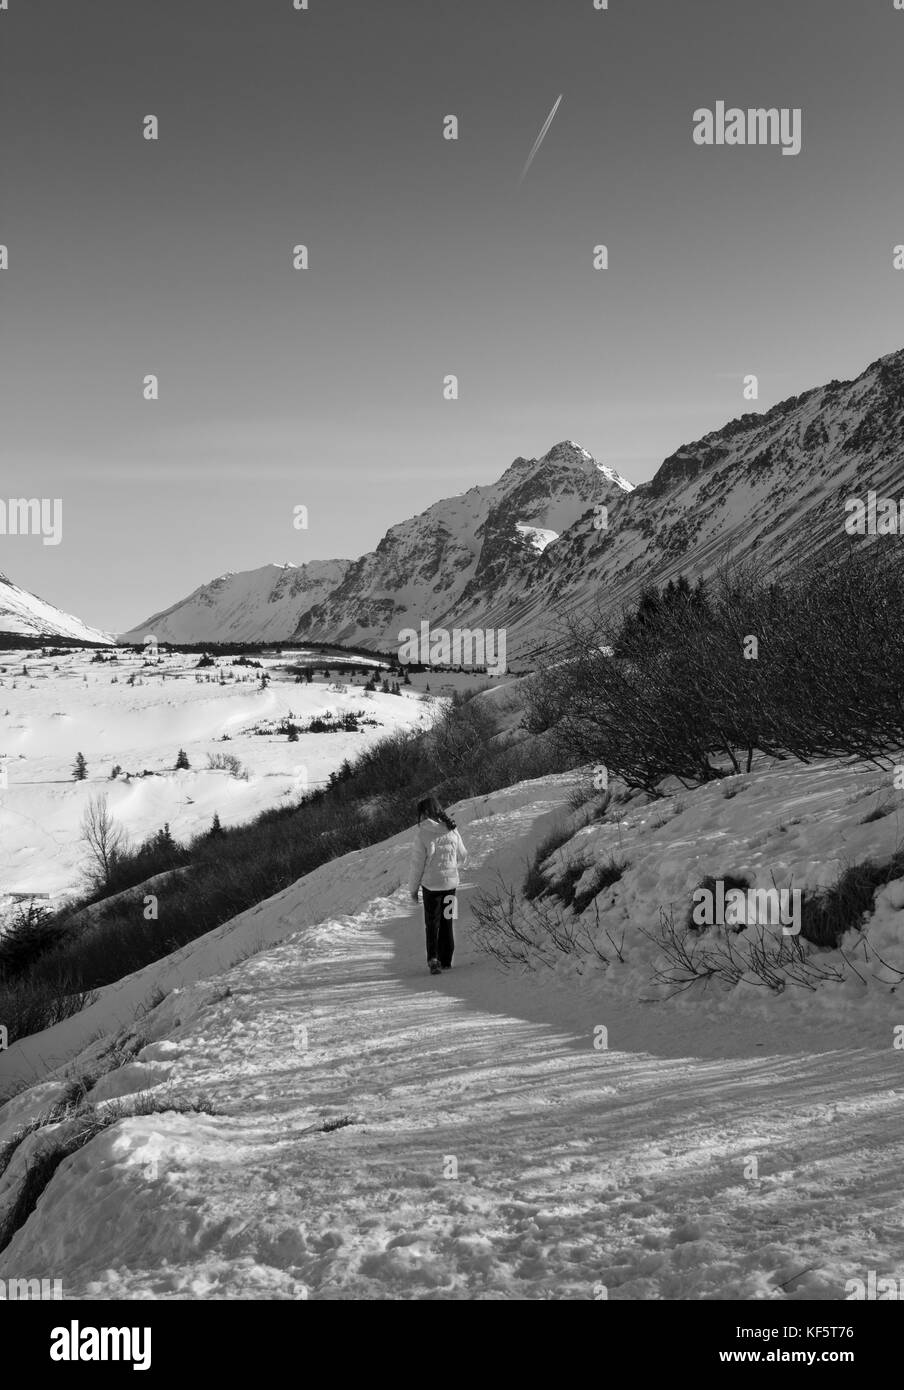 Nella grande terra. immagine in bianco e nero di lone persona in abbigliamento invernale a piedi lungo il sentiero innevato. mountain range in background. Foto Stock